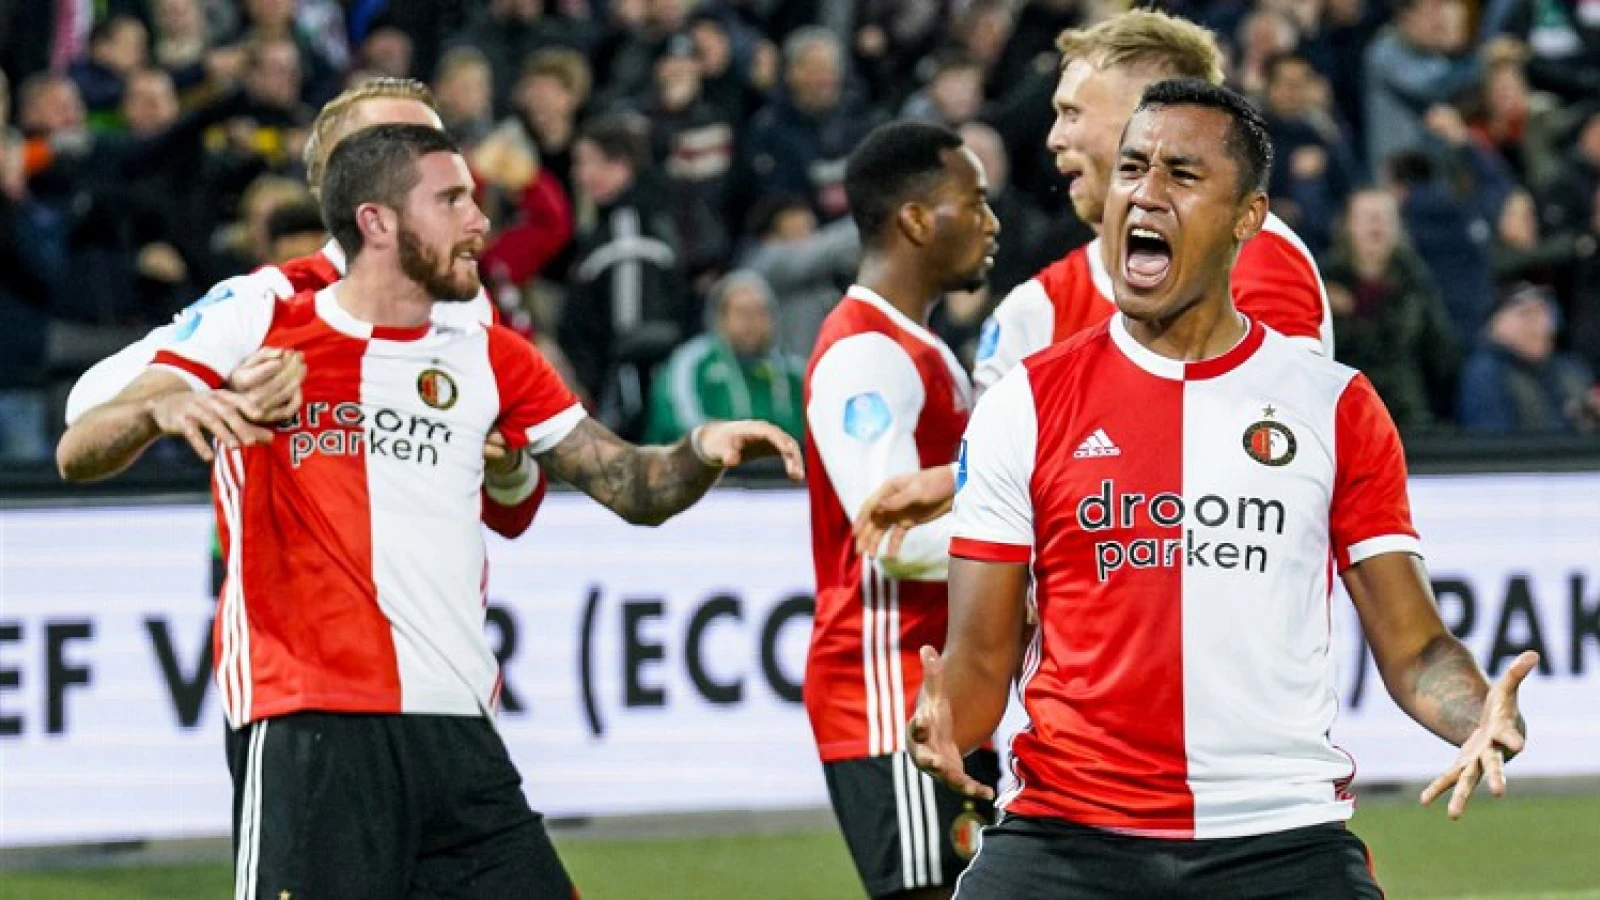 'We zijn slecht begonnen, maar dit Feyenoord kan AZ uitdagen om plek 2'